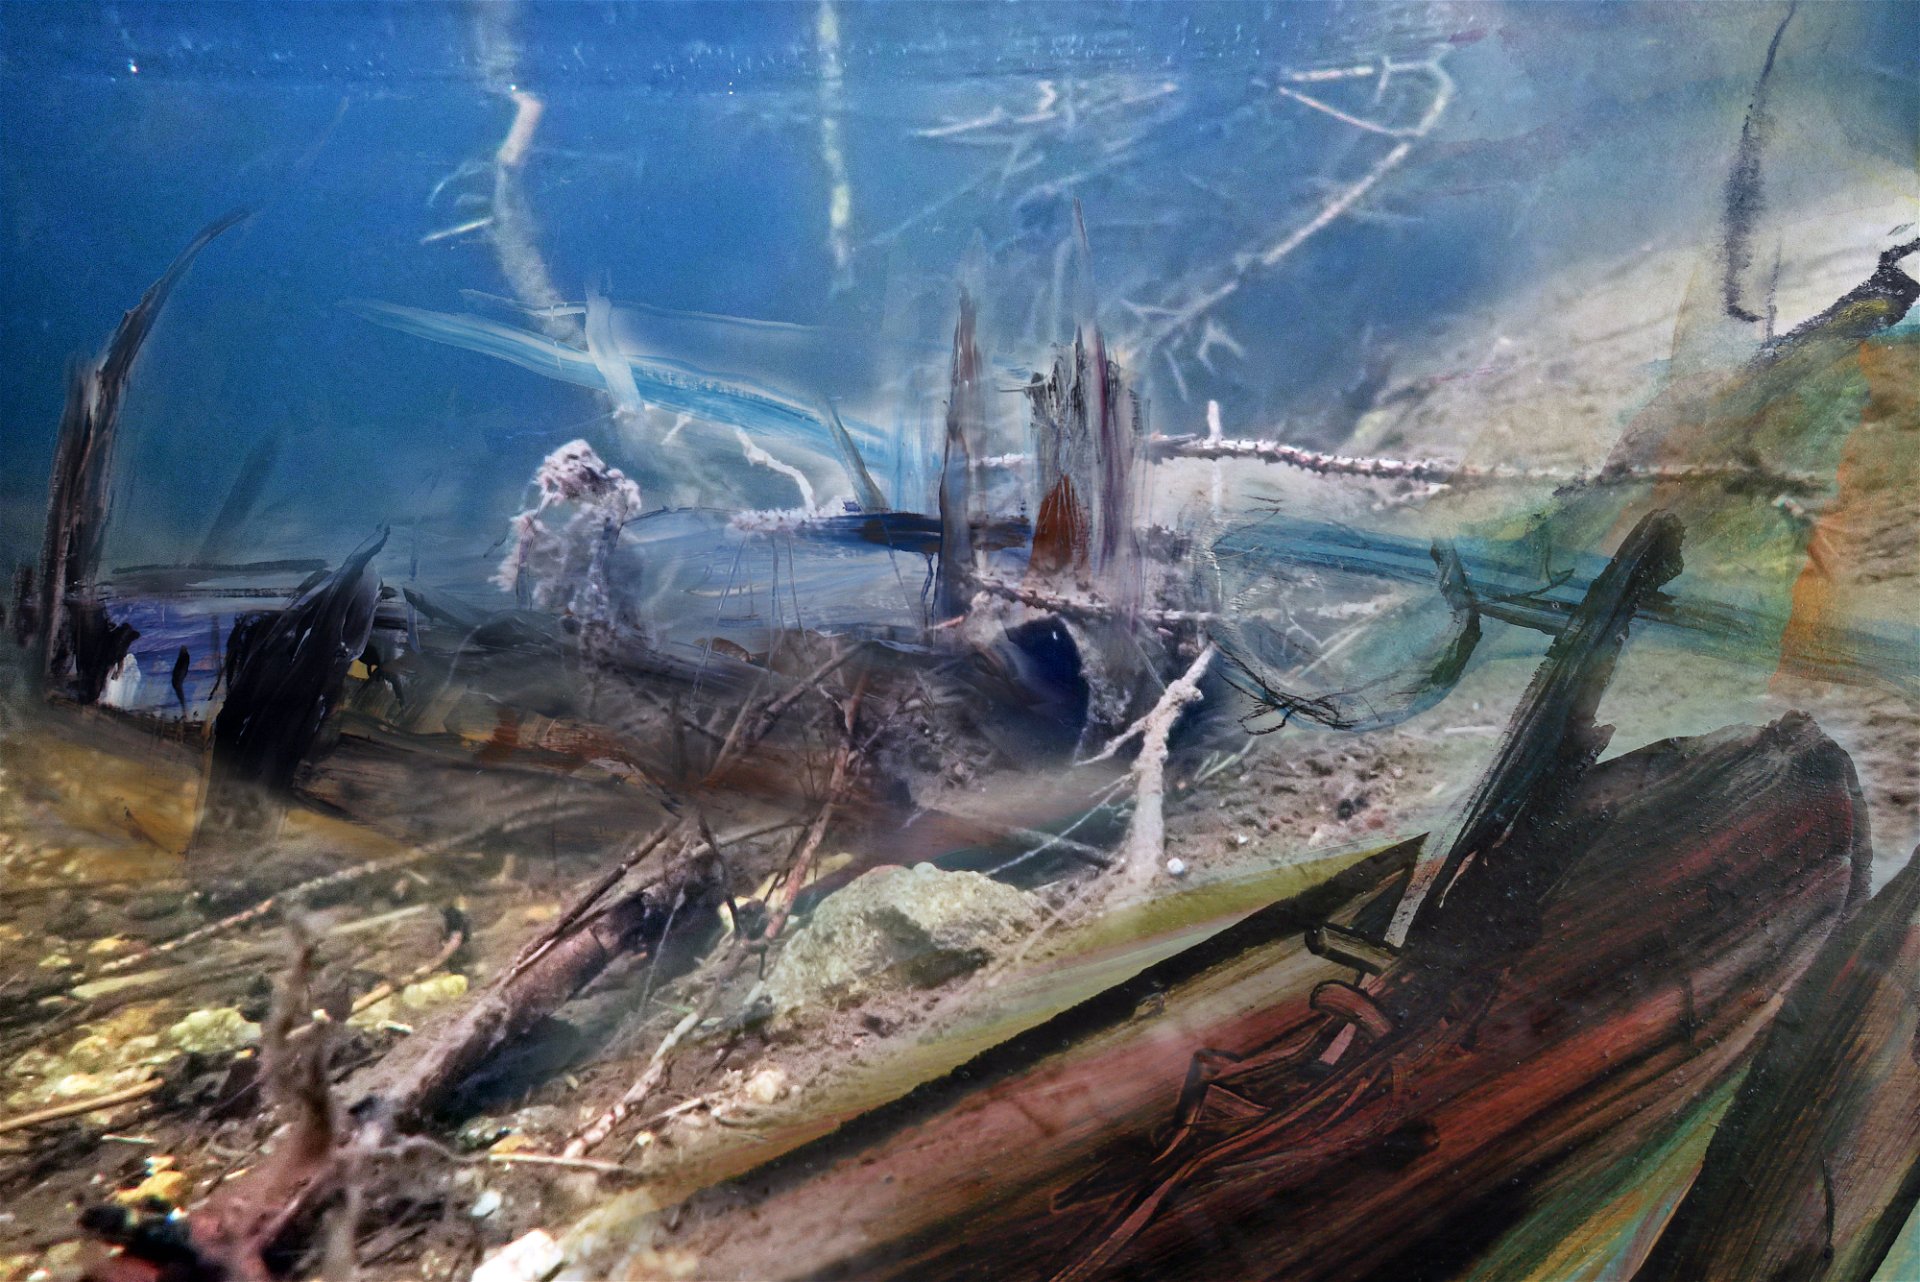 1. Bilderserie »See-Scapes Traunsee«: »In Manfred Hebenstreits Unterwasserserie gehen die Realität des Fotos und die Fantasie des gemalten Bildes ineinander über. Eine spannende Neuinterpretation beleuchteter Kunst!«